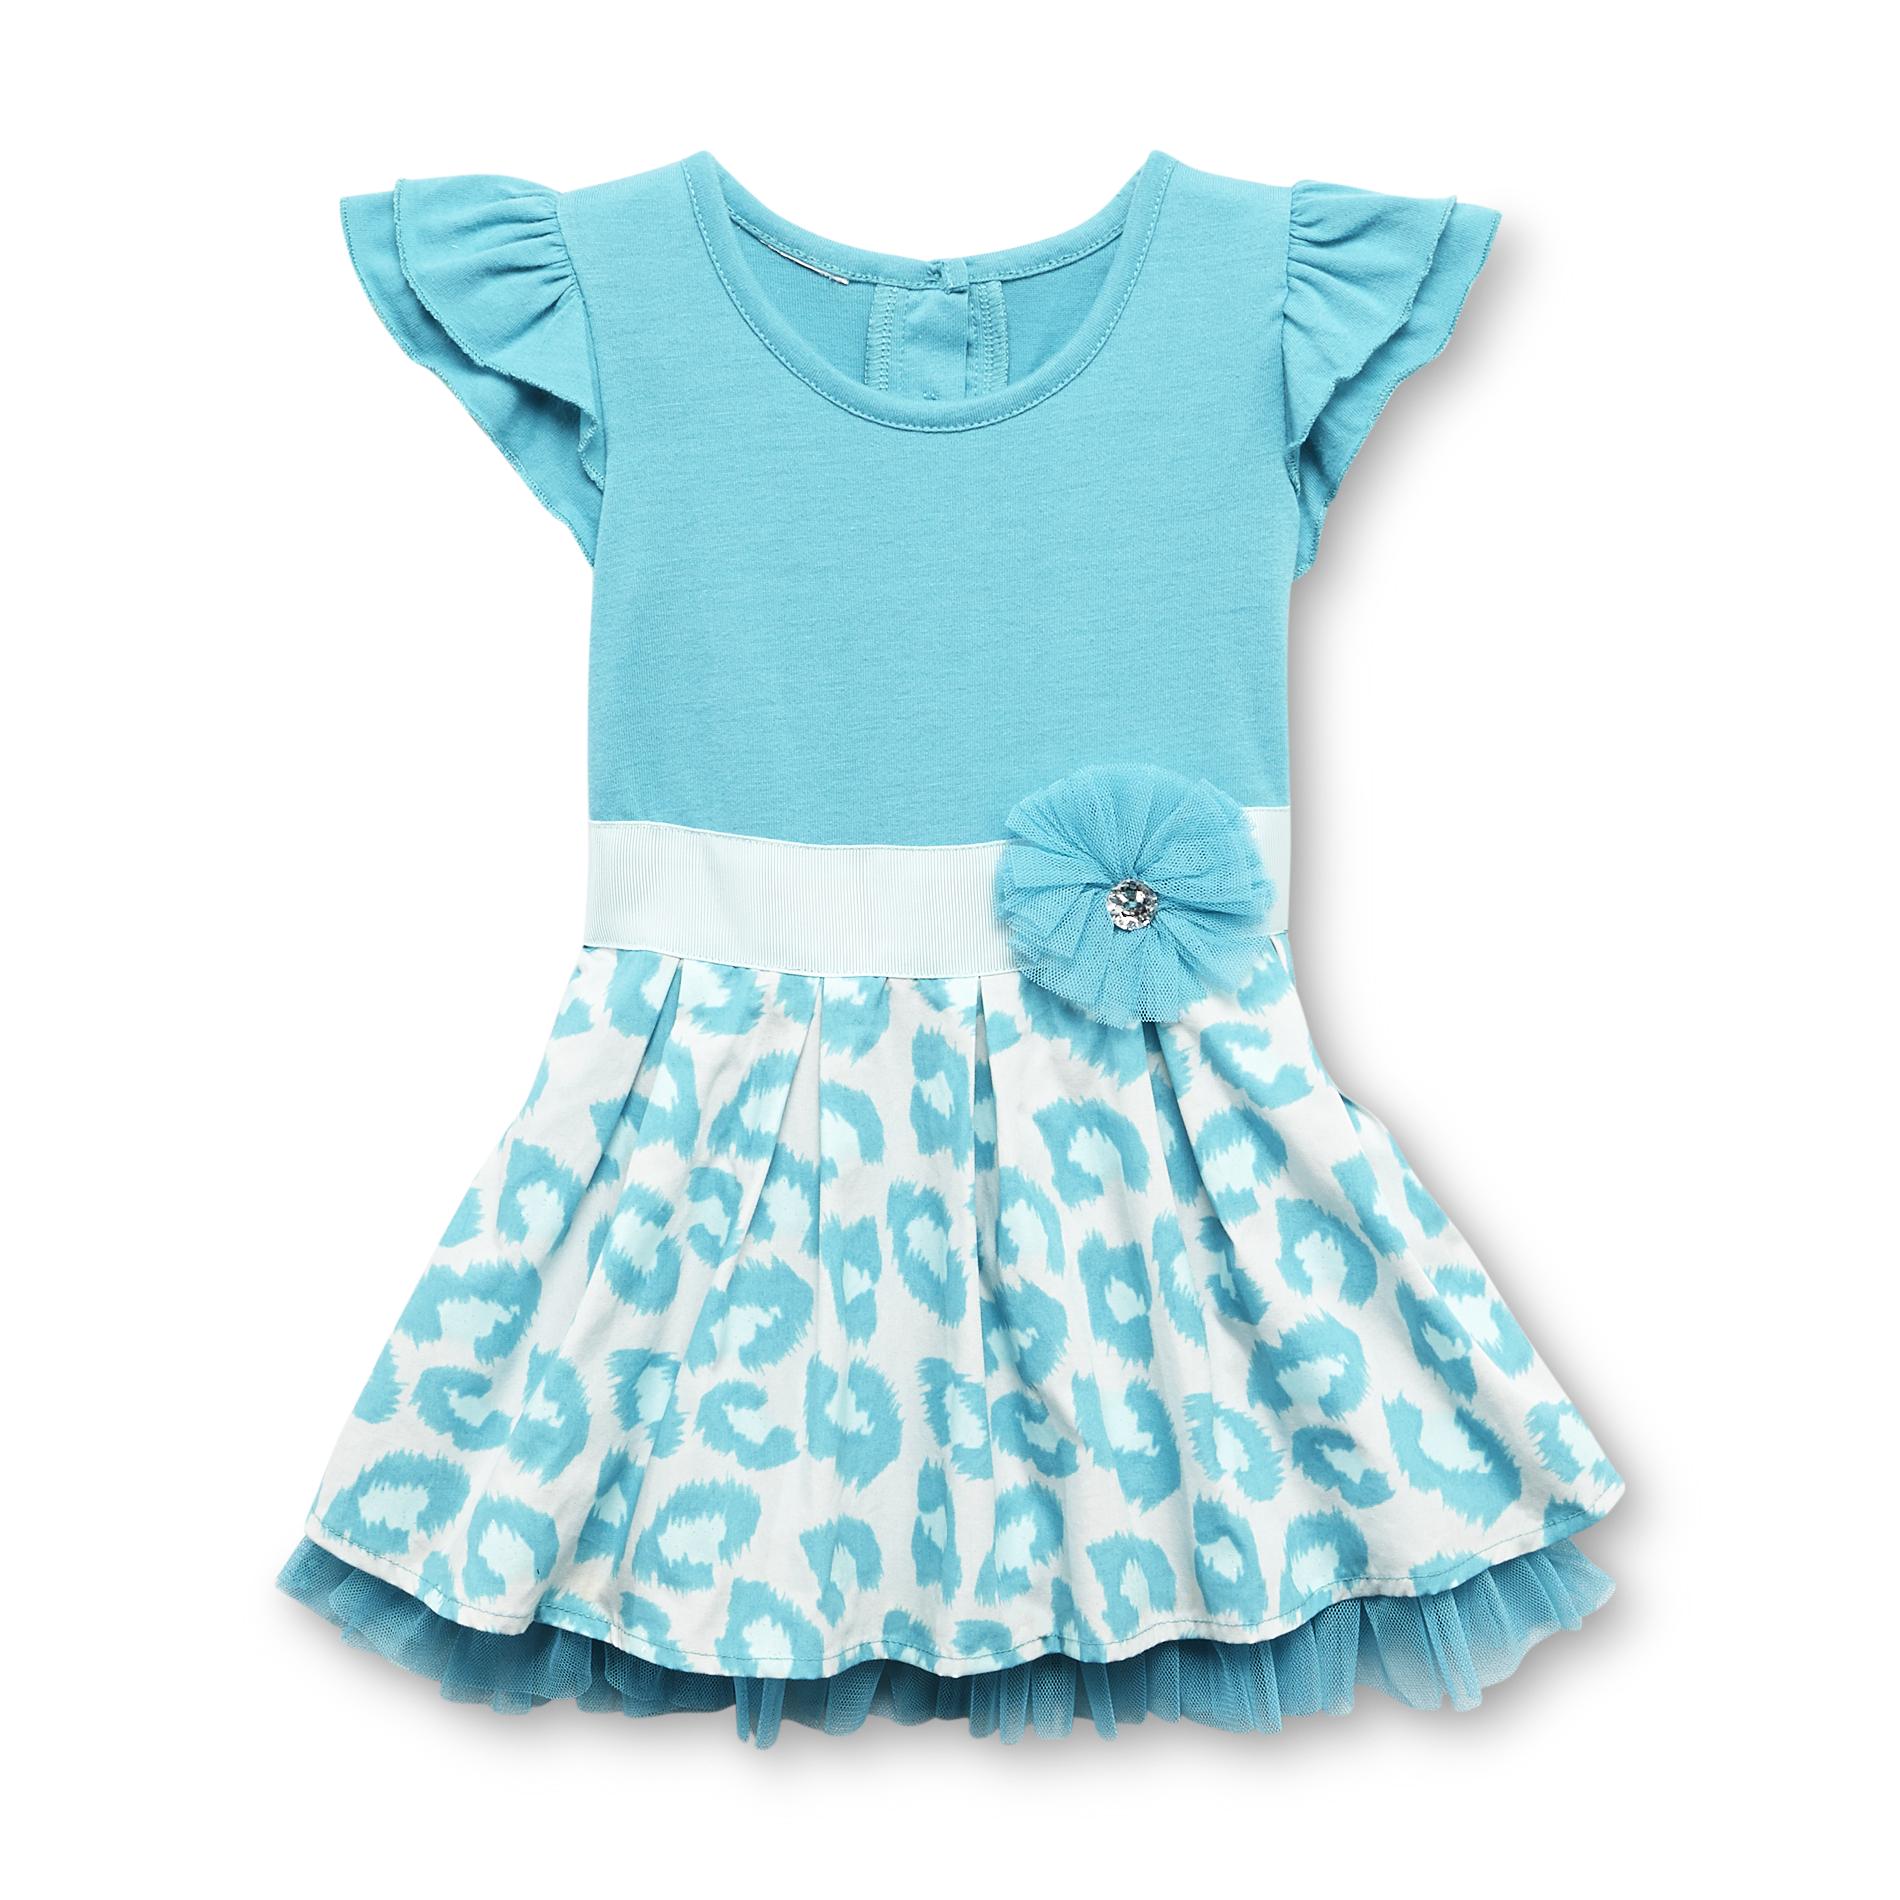 WonderKids Infant & Toddler Girl's Dress - Animal Print